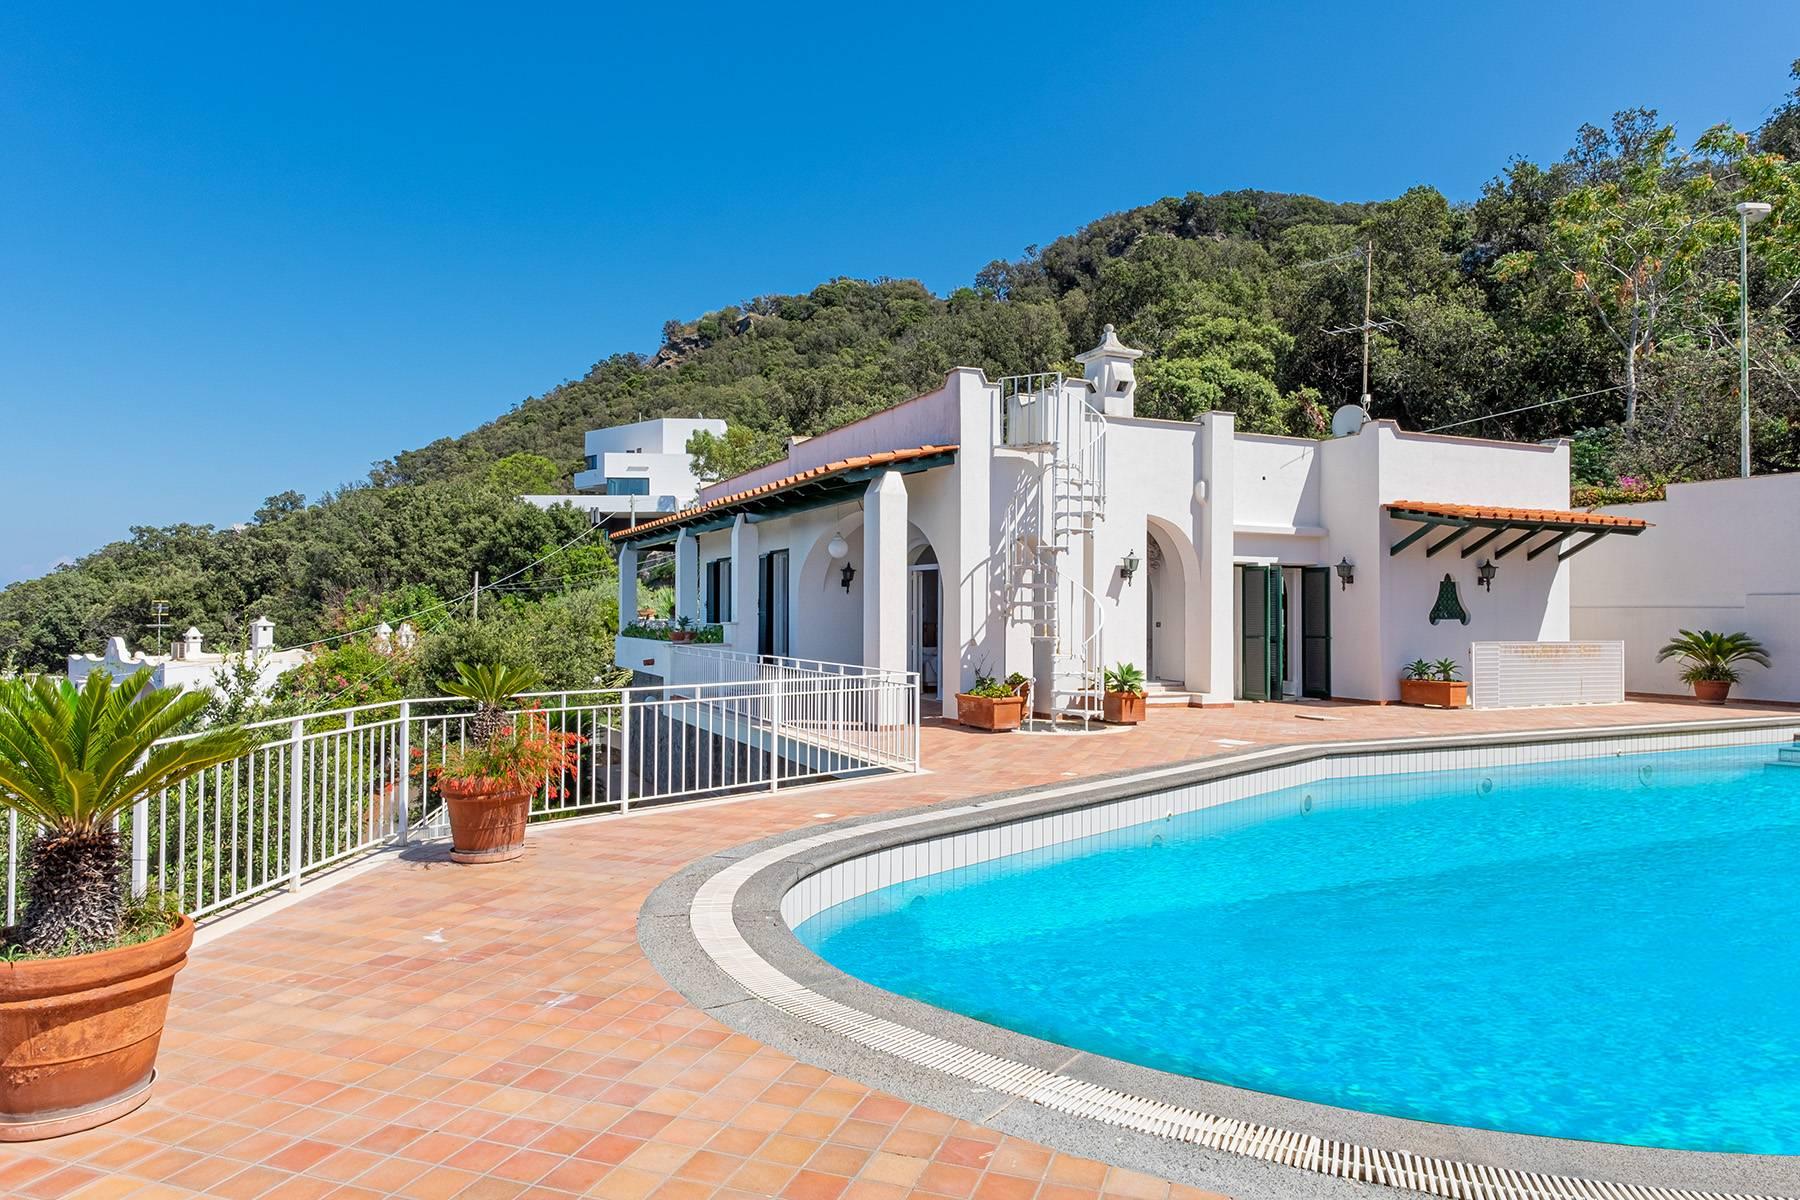 Villa mediterranea con piscina e discesa a mare privata - 1